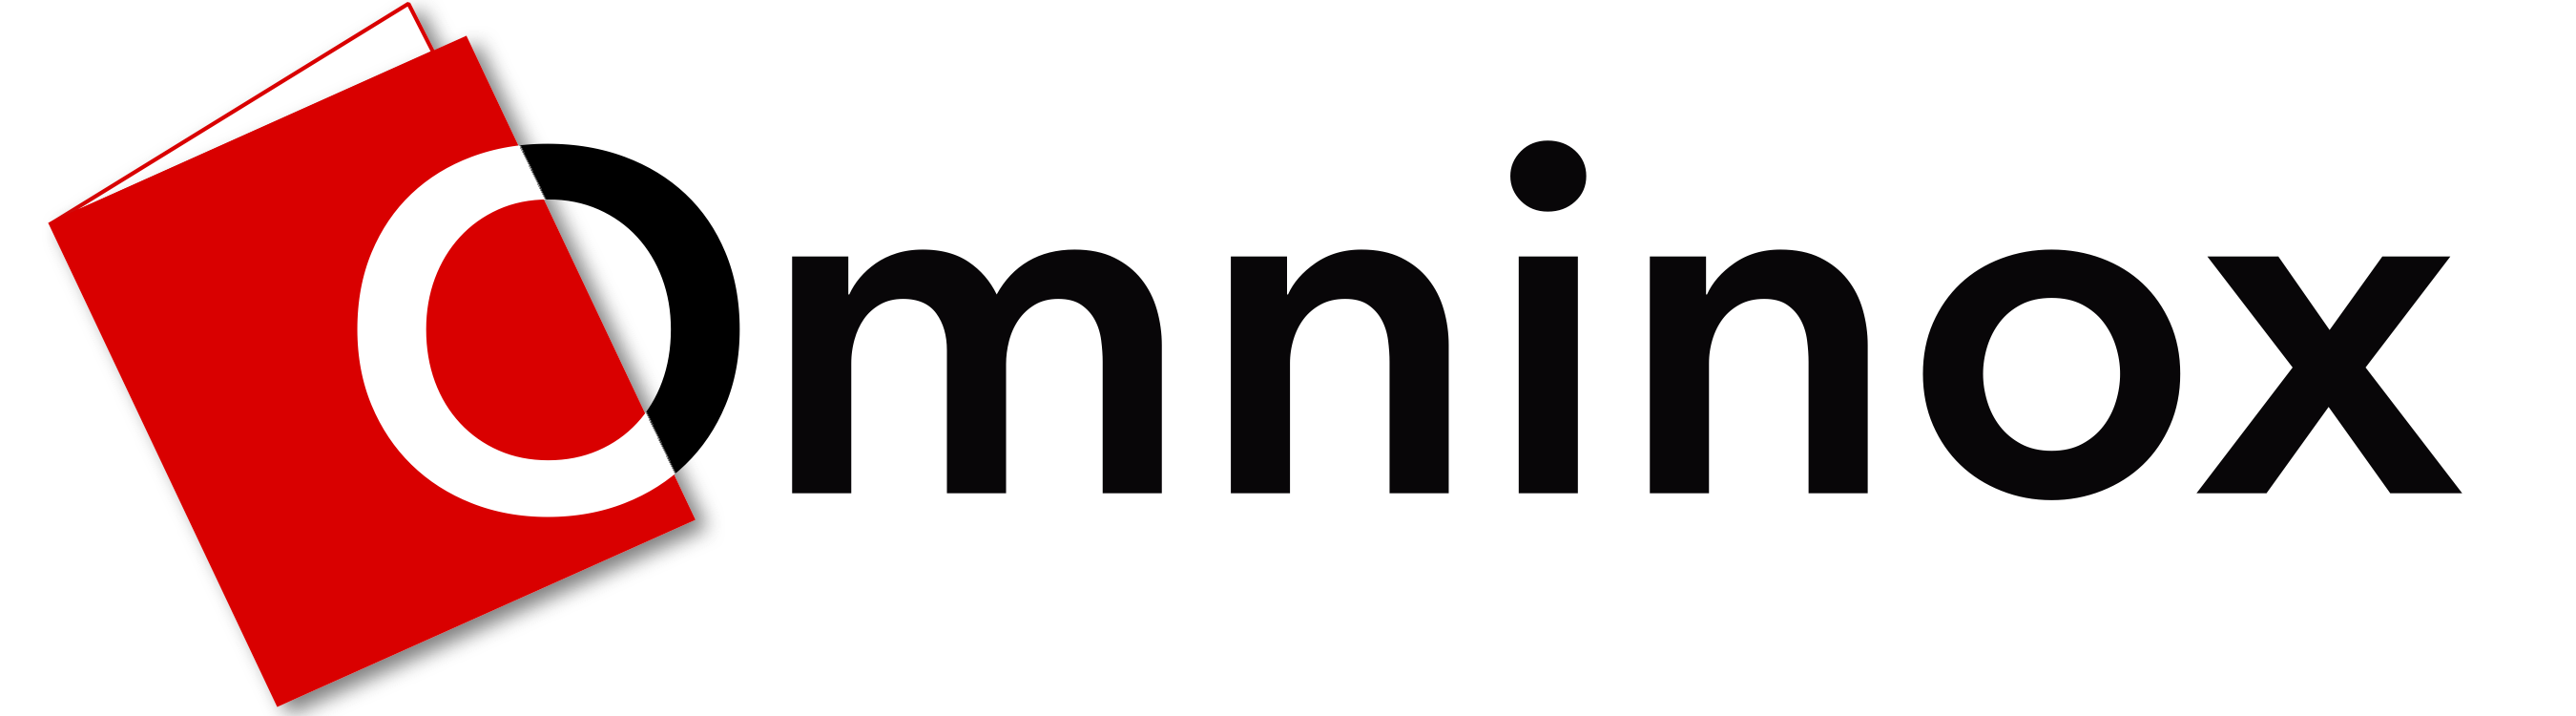 Omninox logo